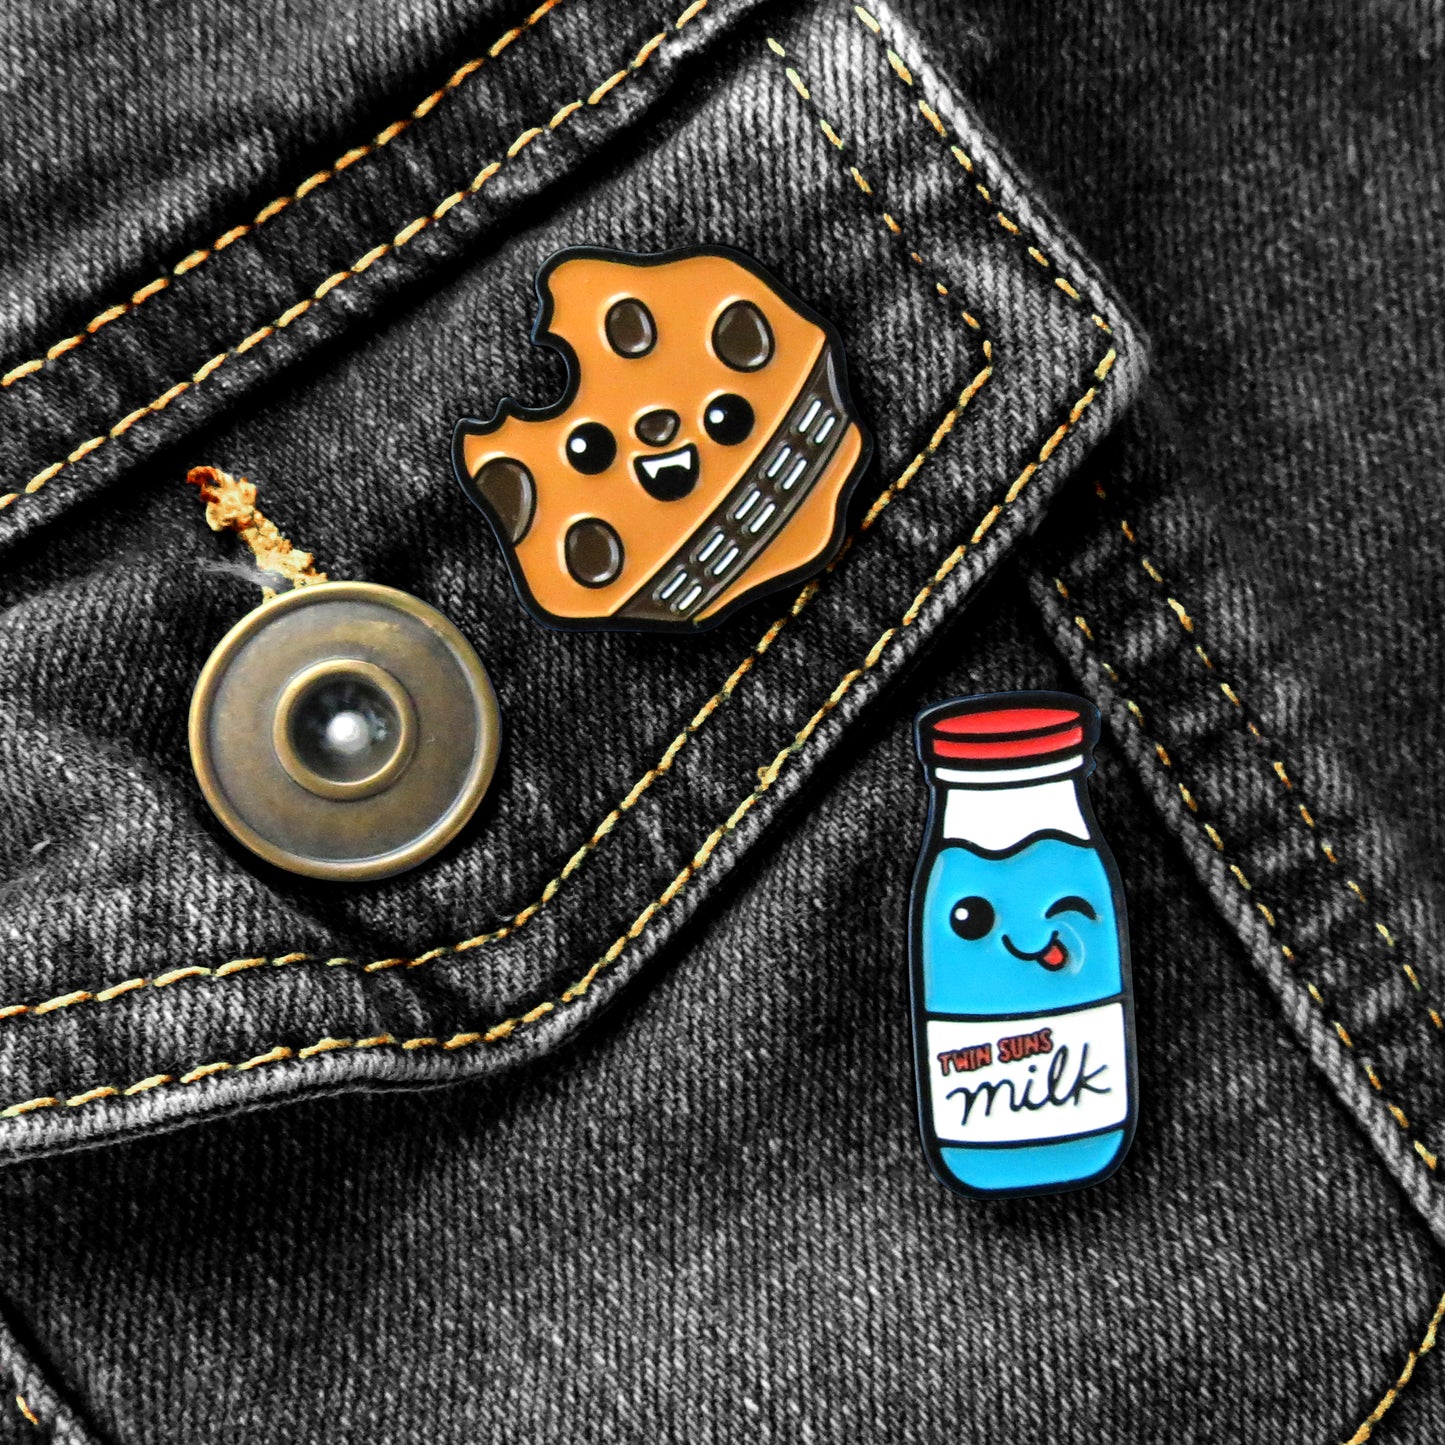 Star Wars Wookie Cookie and Blue Milk enamel pins on black jean jacket pocket